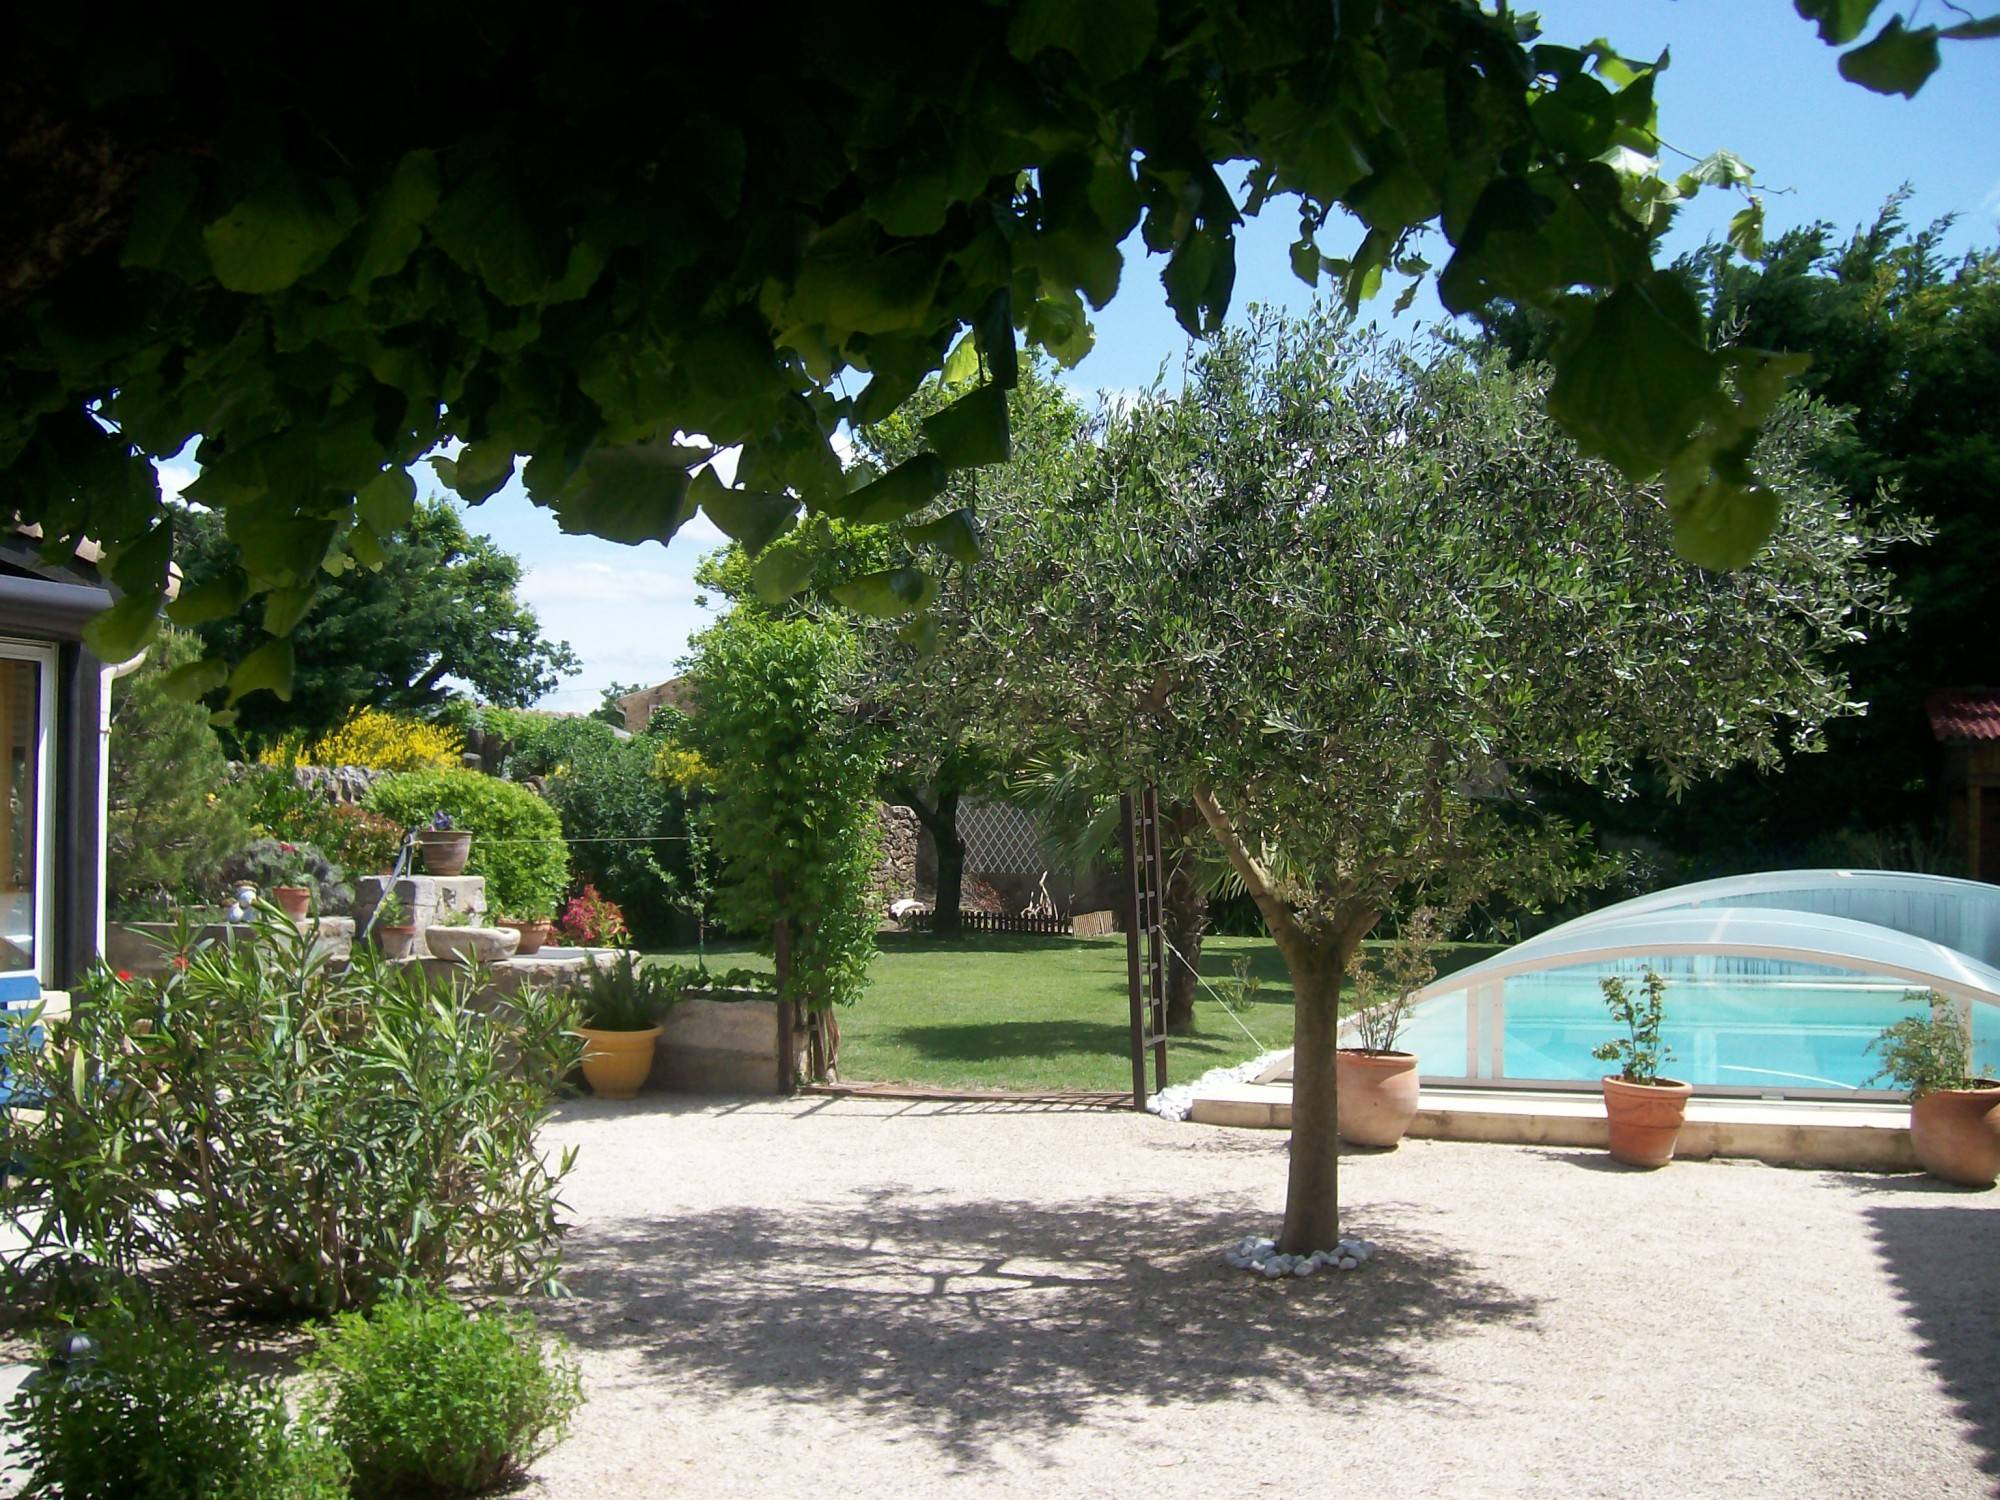 A vendre, Maison de village Proche Suze la Rousse  Jardin avec piscine A vendre, Maison de village Proche Suze la Rousse  Drôme Provençale Jardin avec piscine